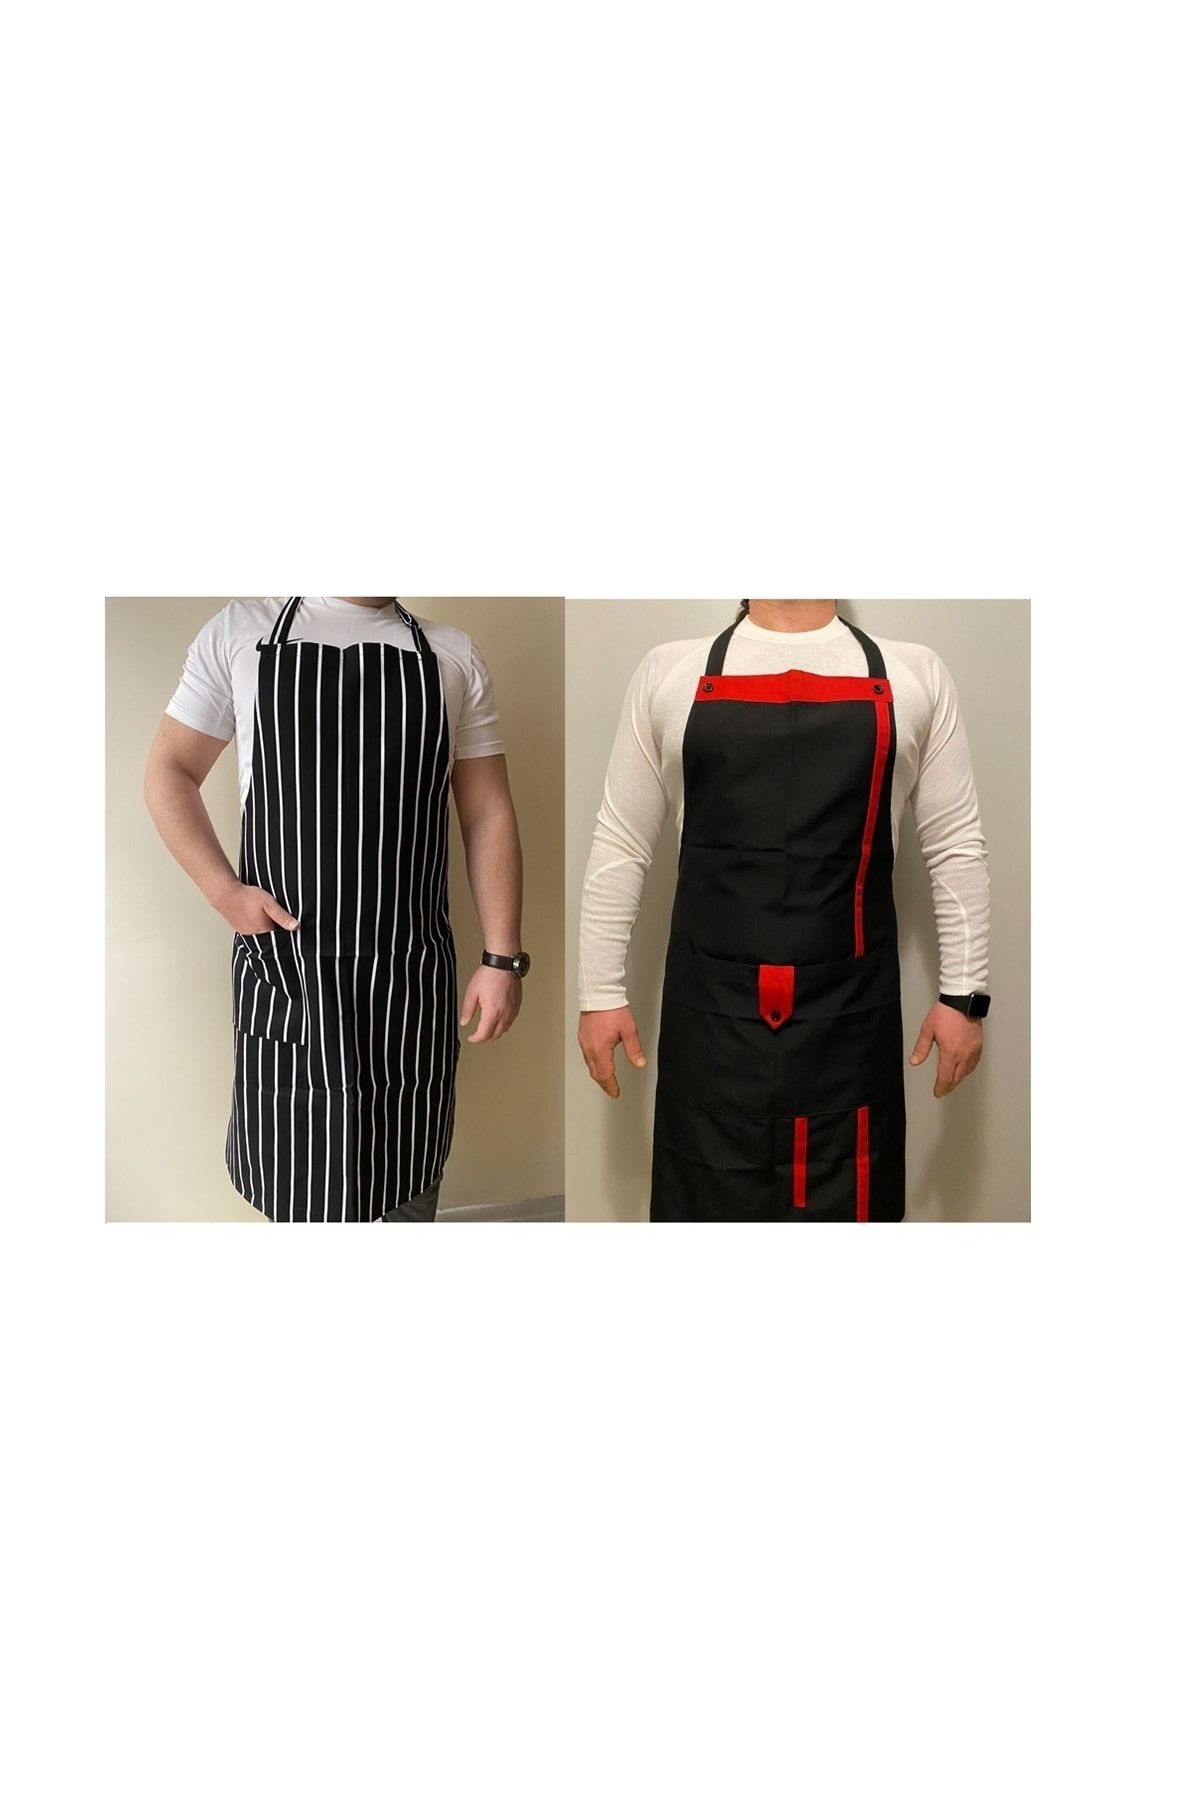 Umut Tekstil 2 Adet Farklı Modelli Önlük Mutfak Garson Aşçı Şef Servis Mutfak Önlüğü Boydan Askılı Cepli Unisex